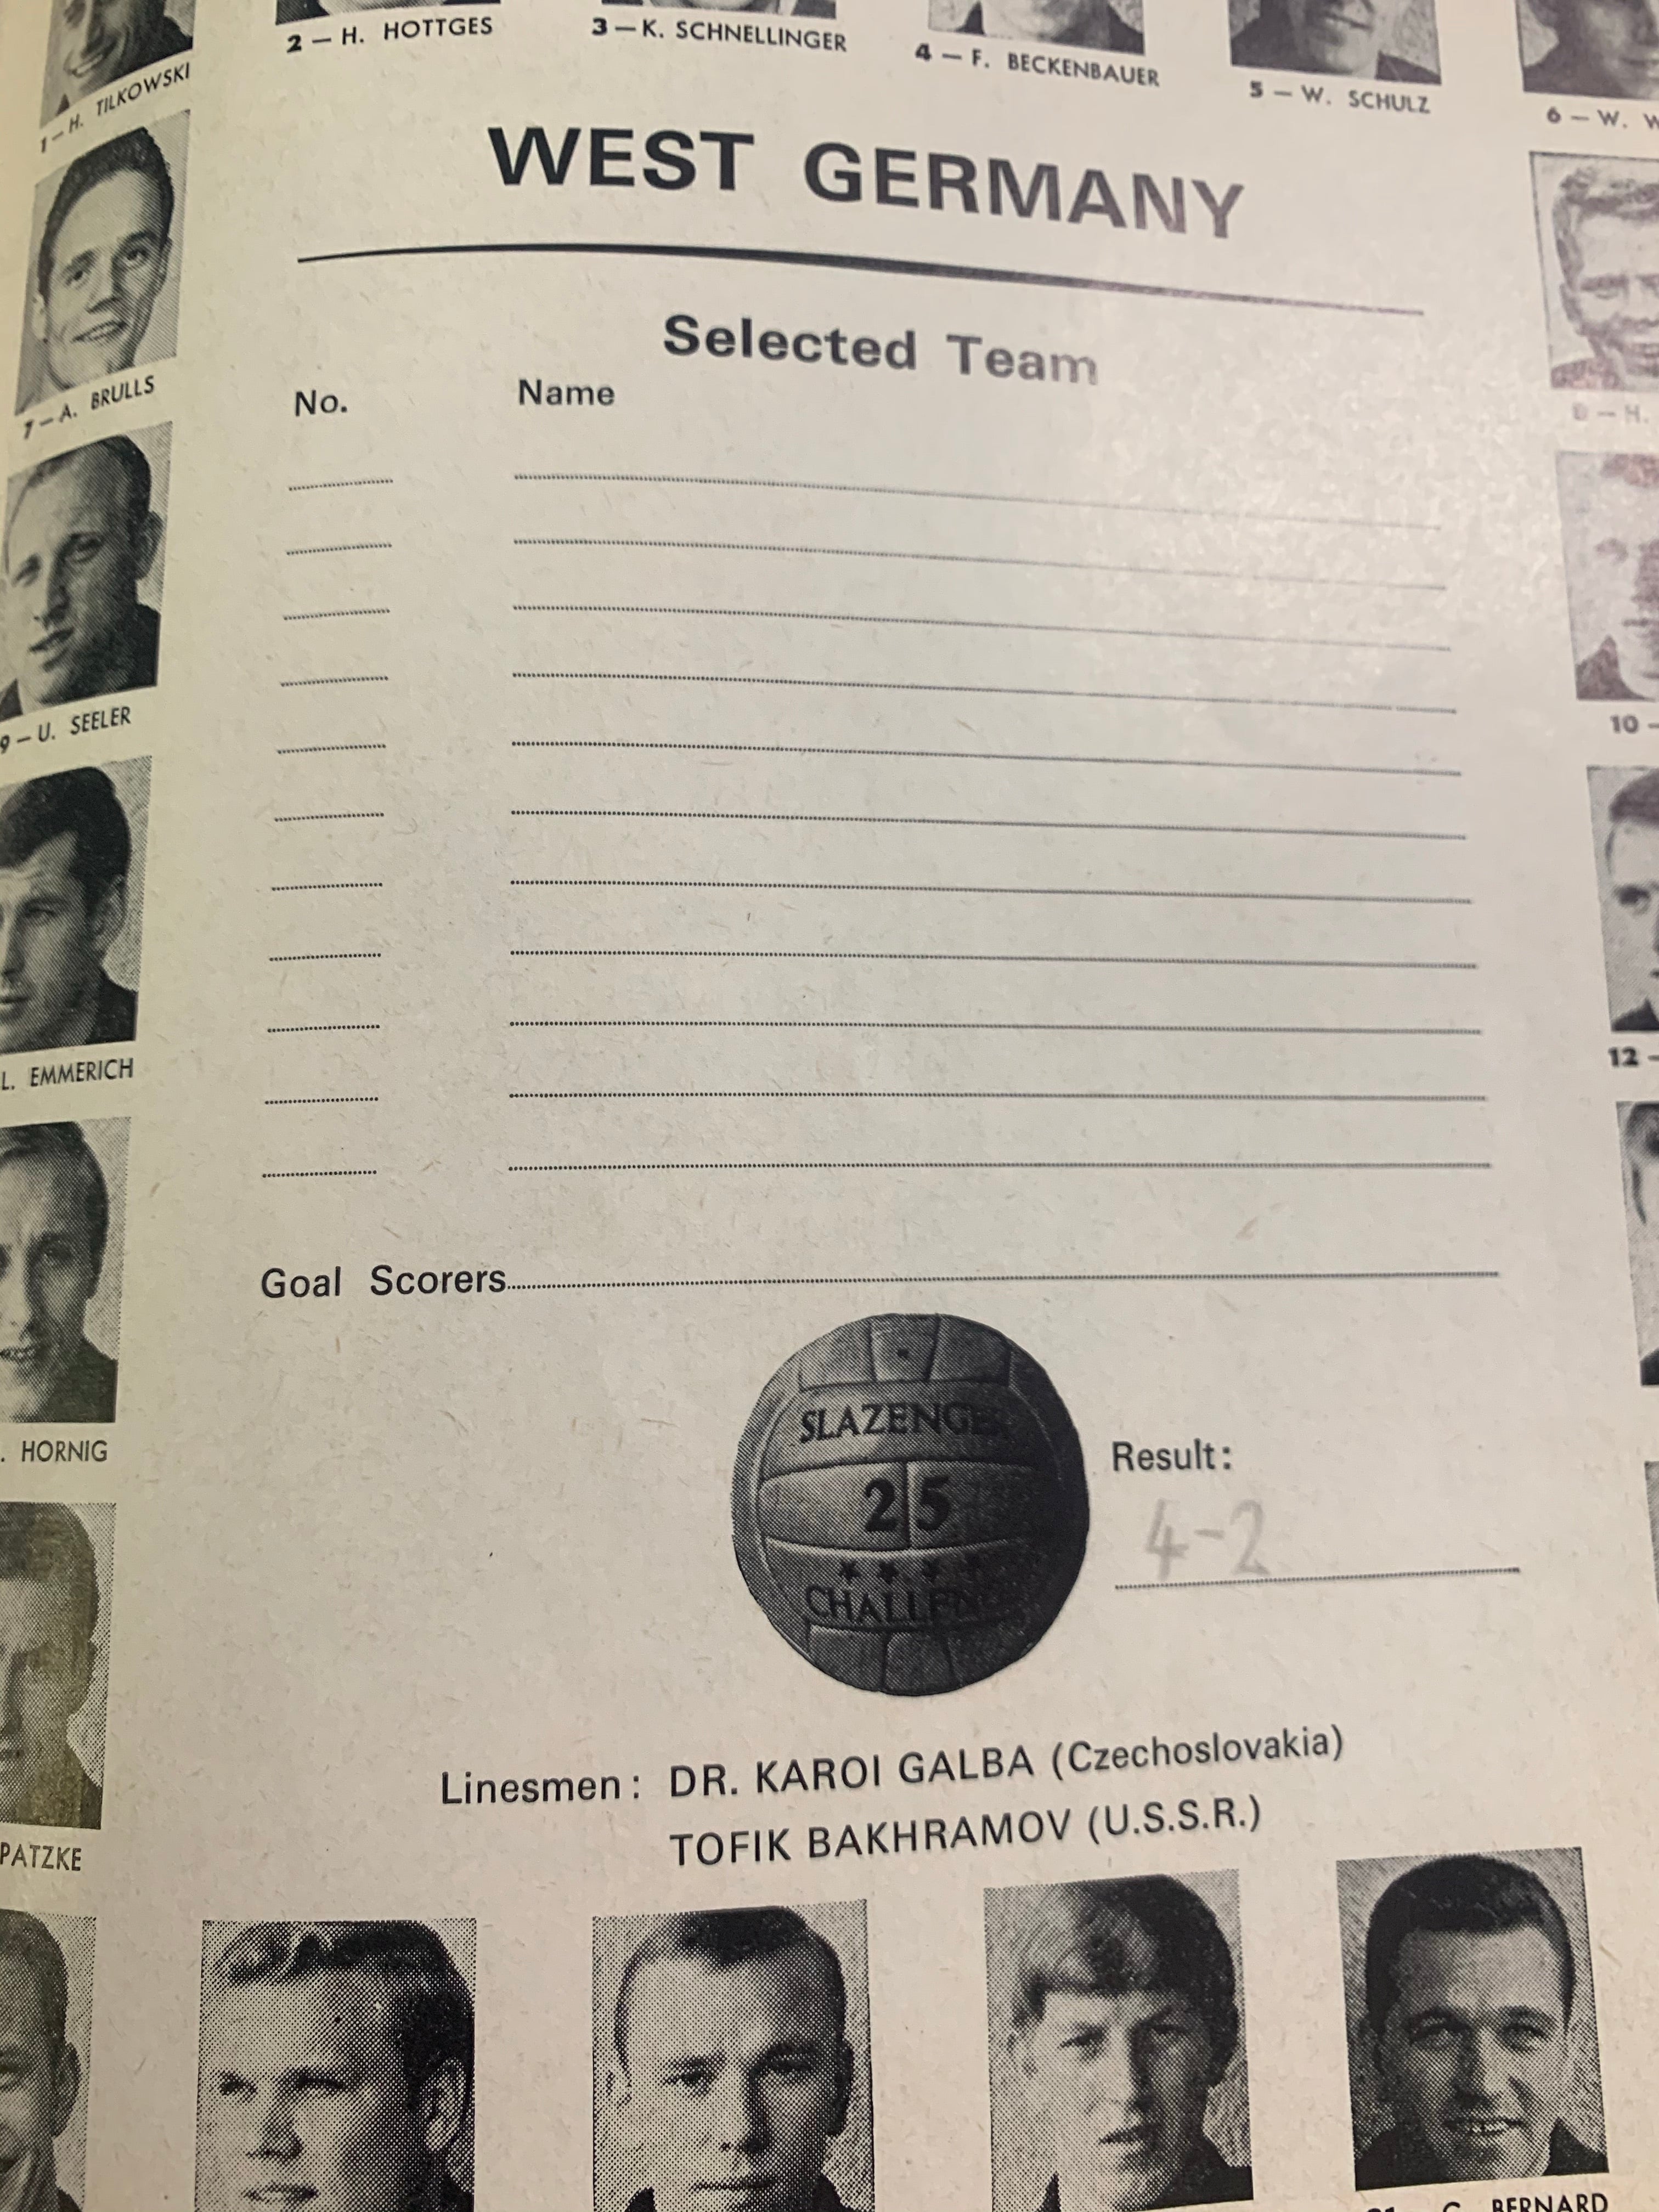 Original 1966 World Cup Final Programme